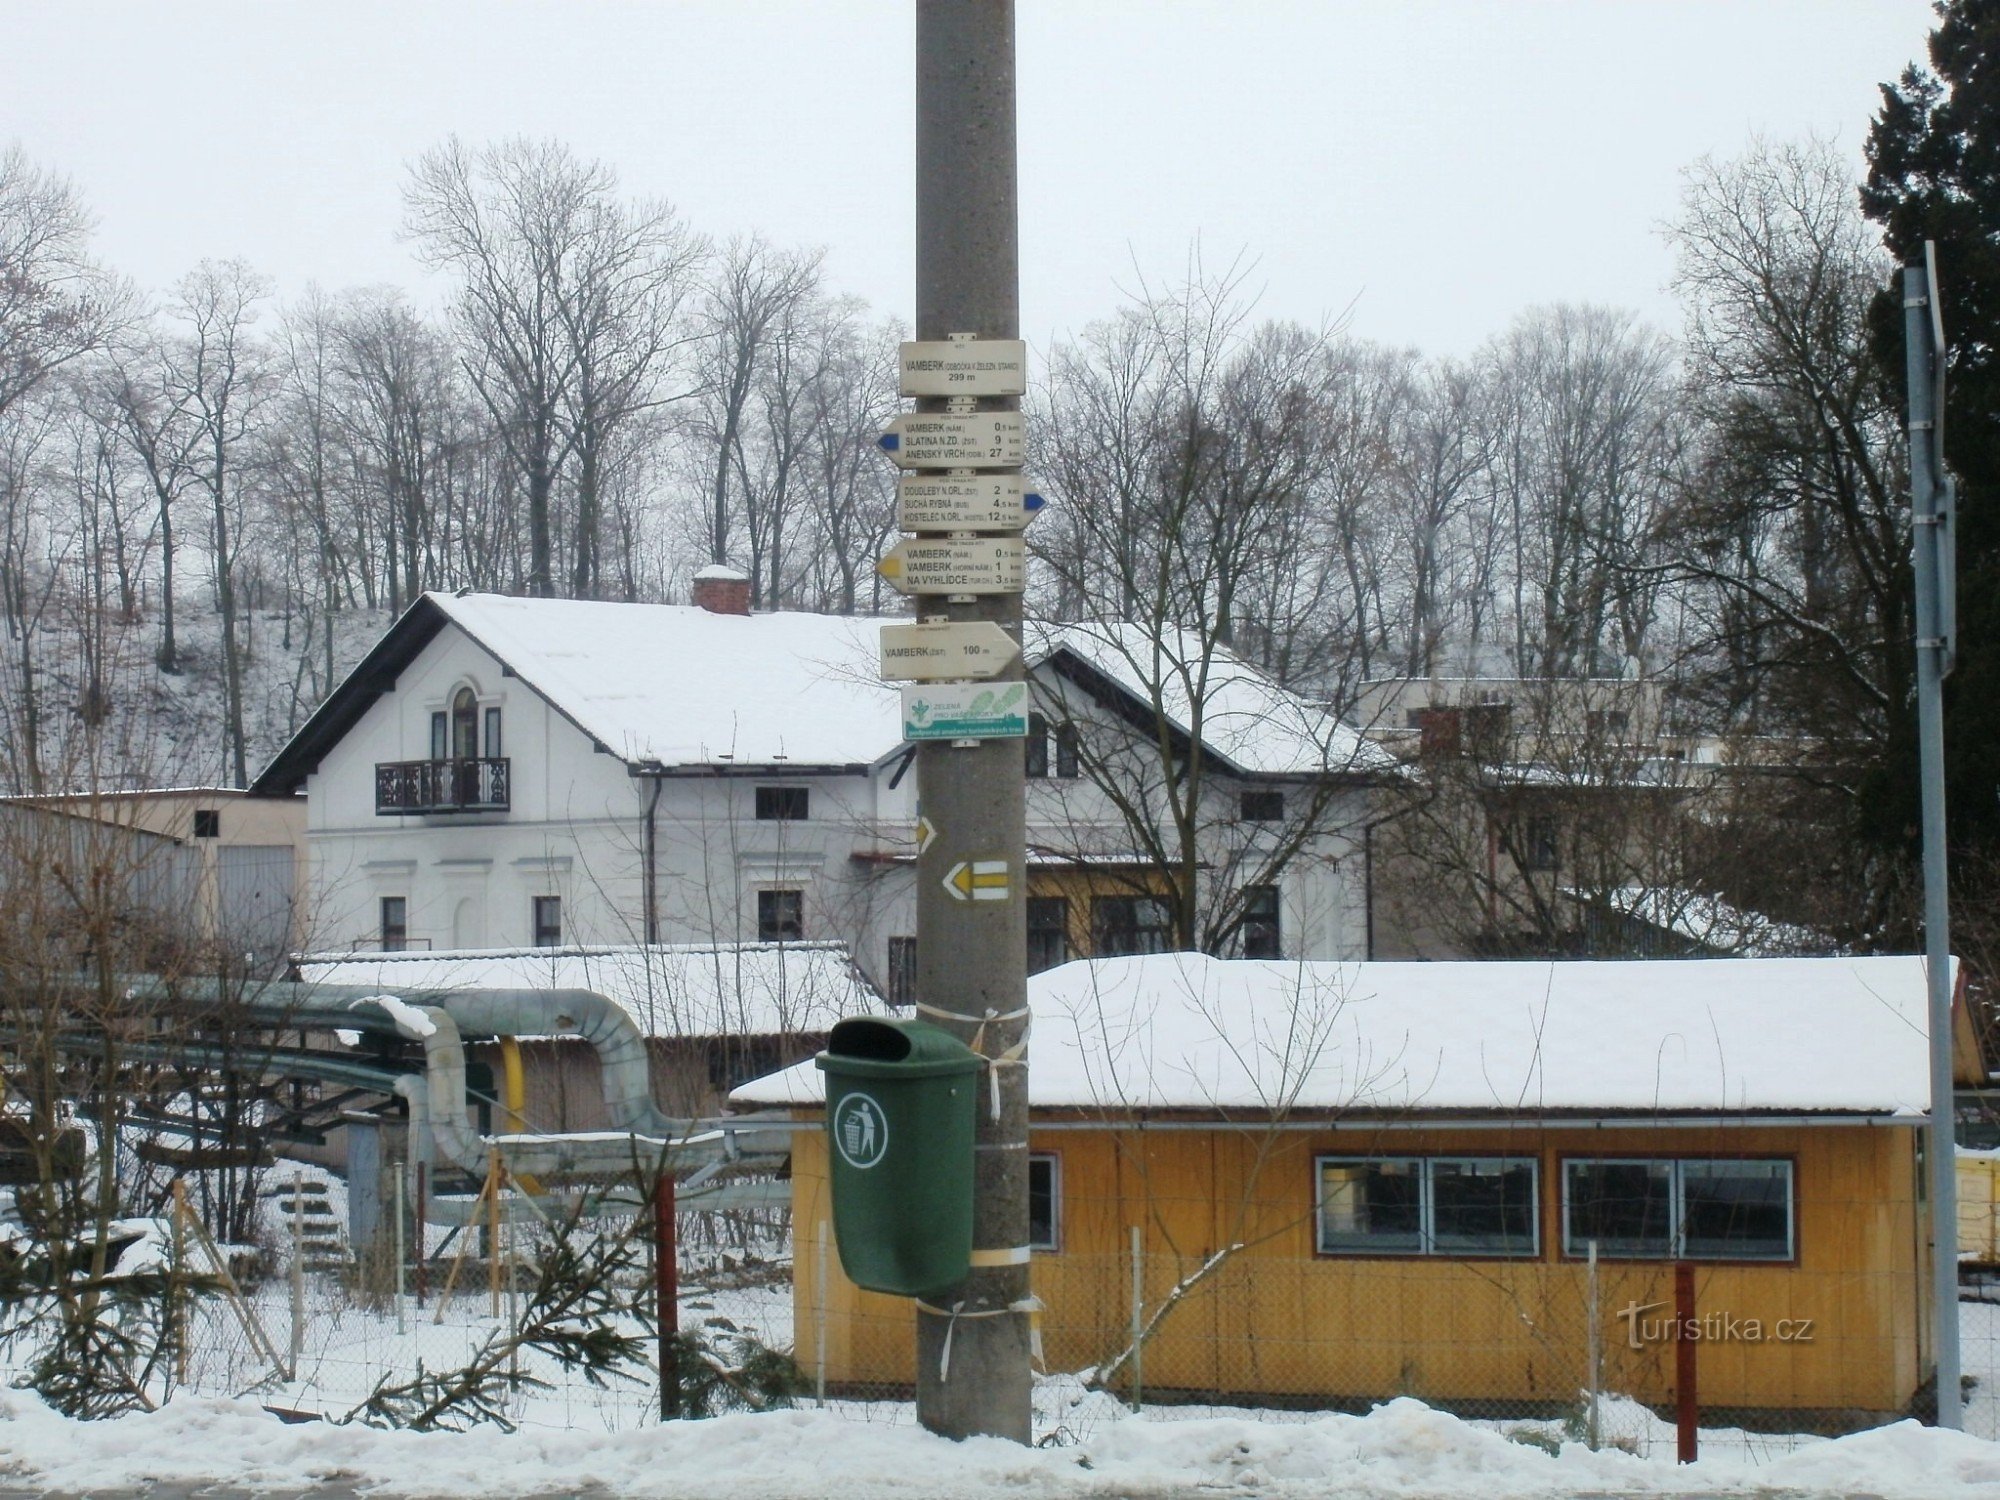 cruce turístico Vamberk - estación de tren